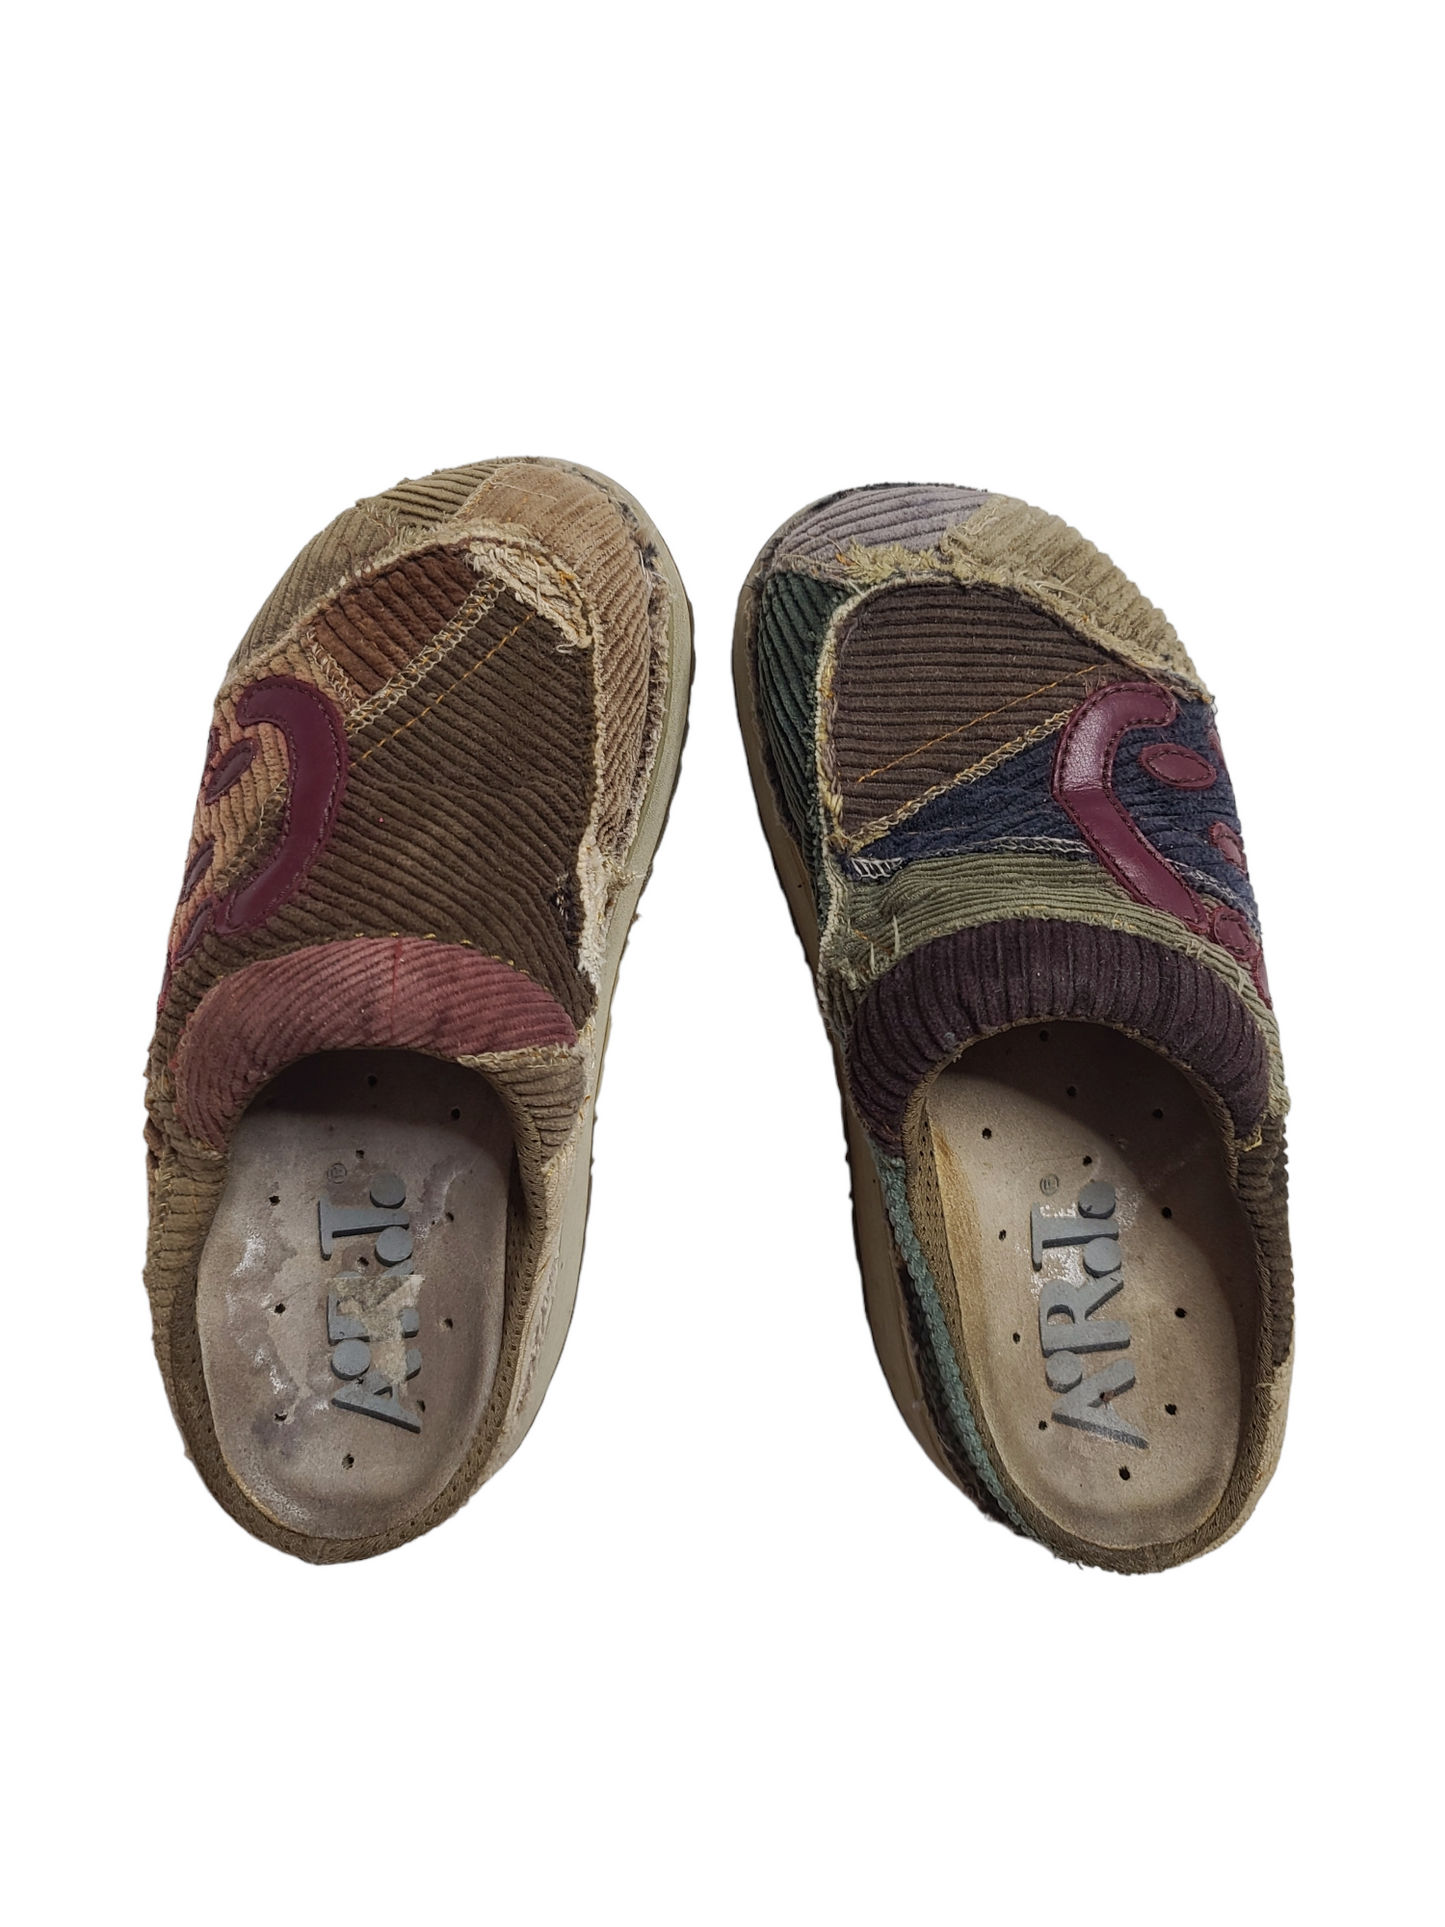 Grunge patchwork platforms shoes